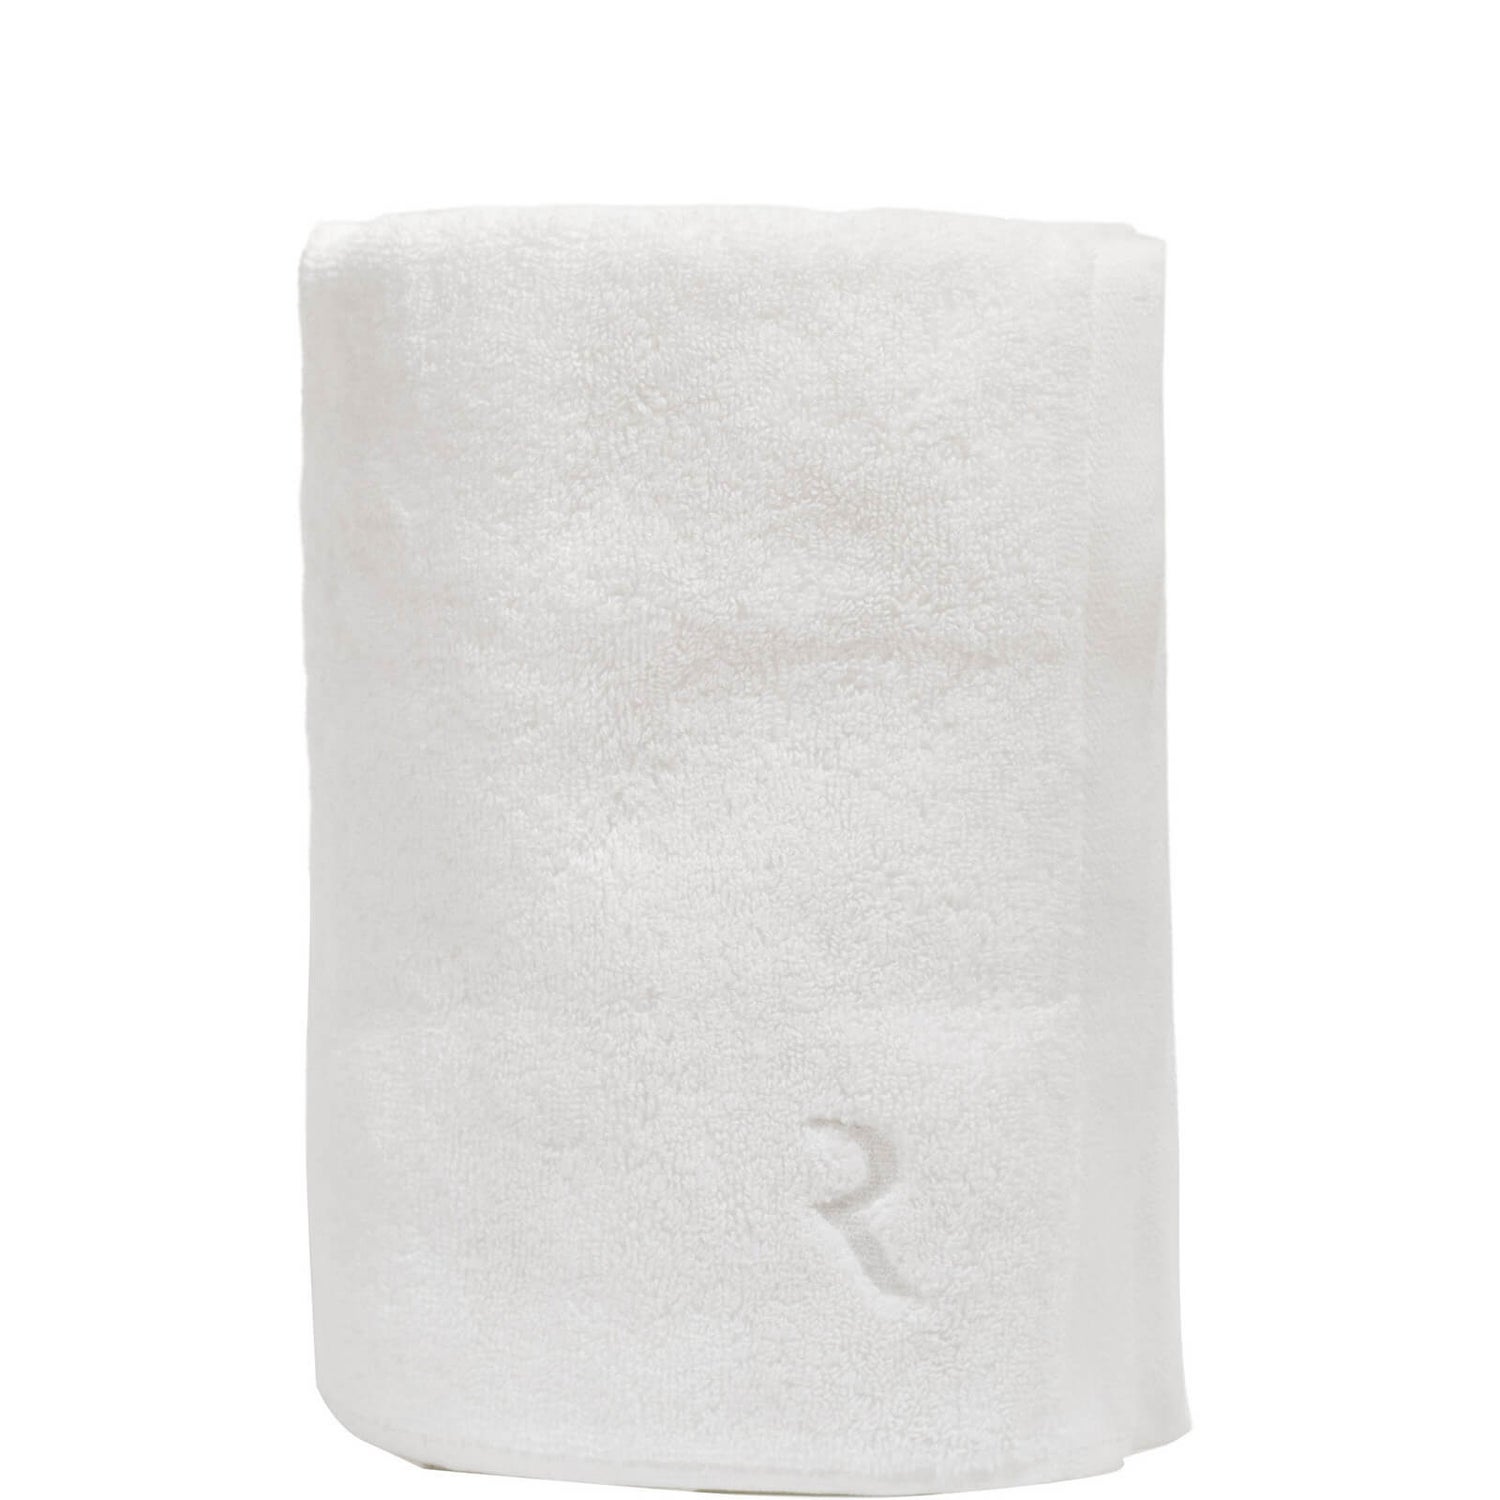 Resorè Body Towel